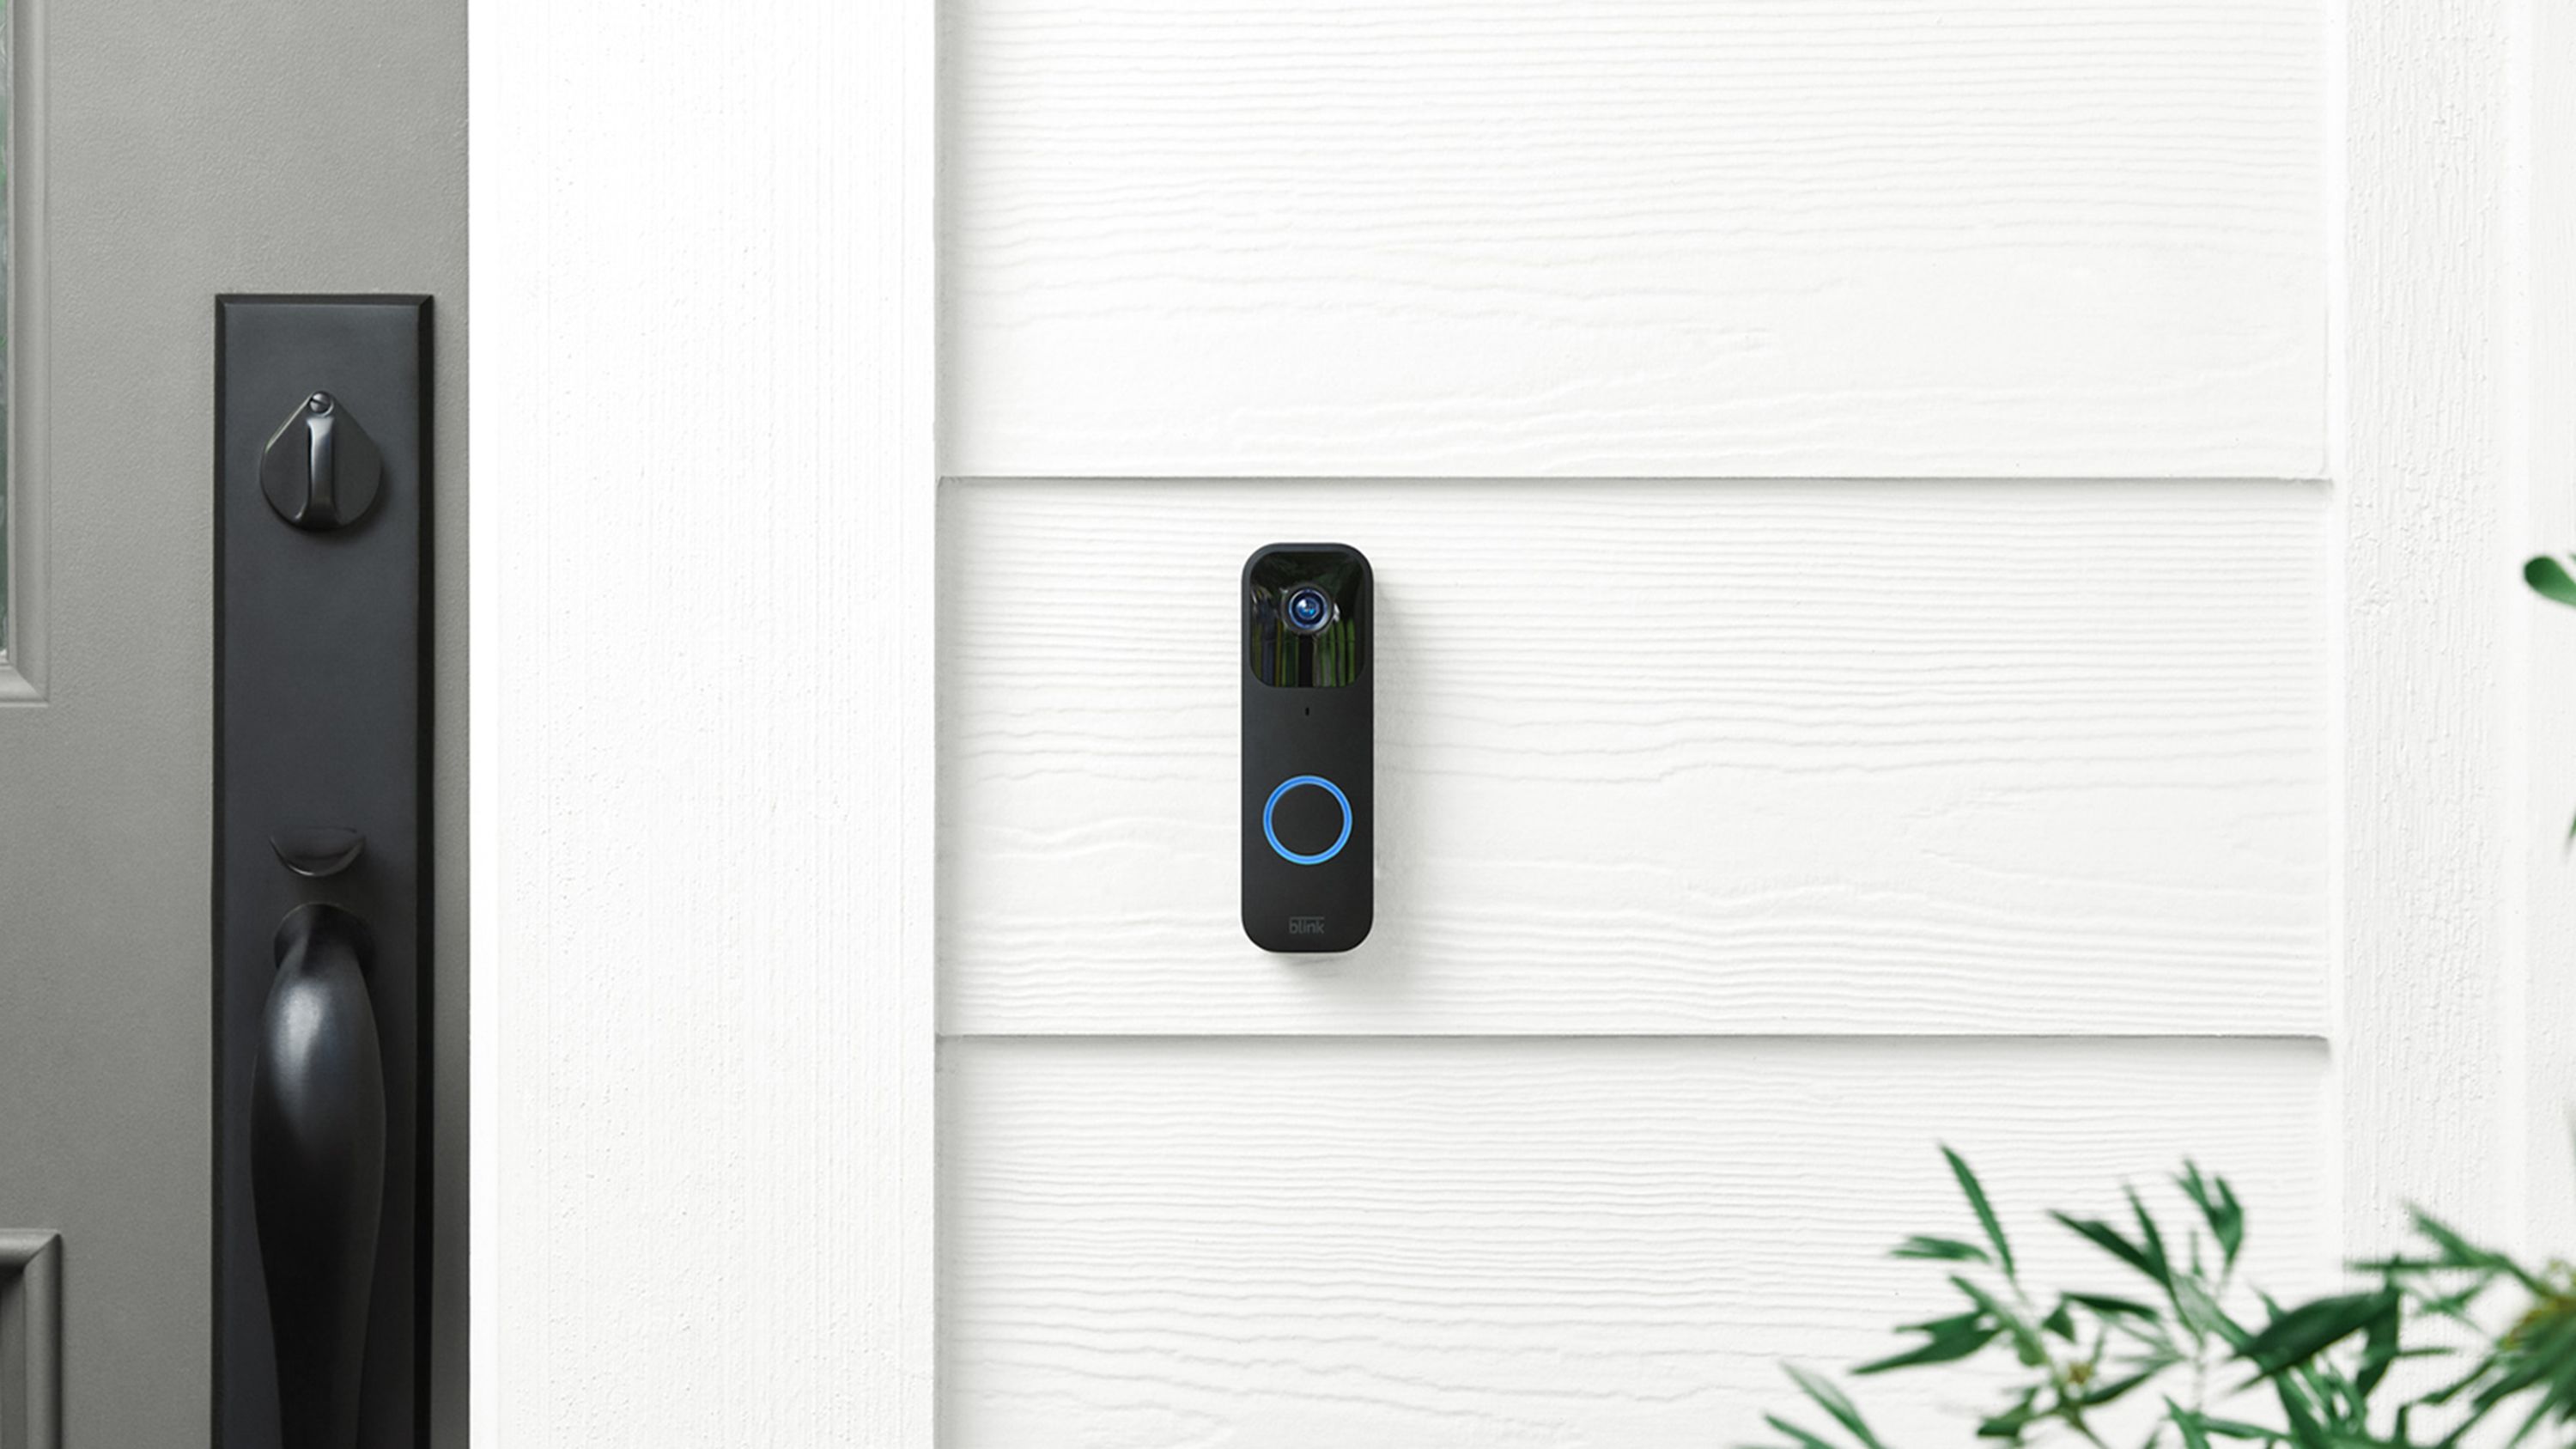 Blink Video Doorbell review: A reliable $50 doorbell